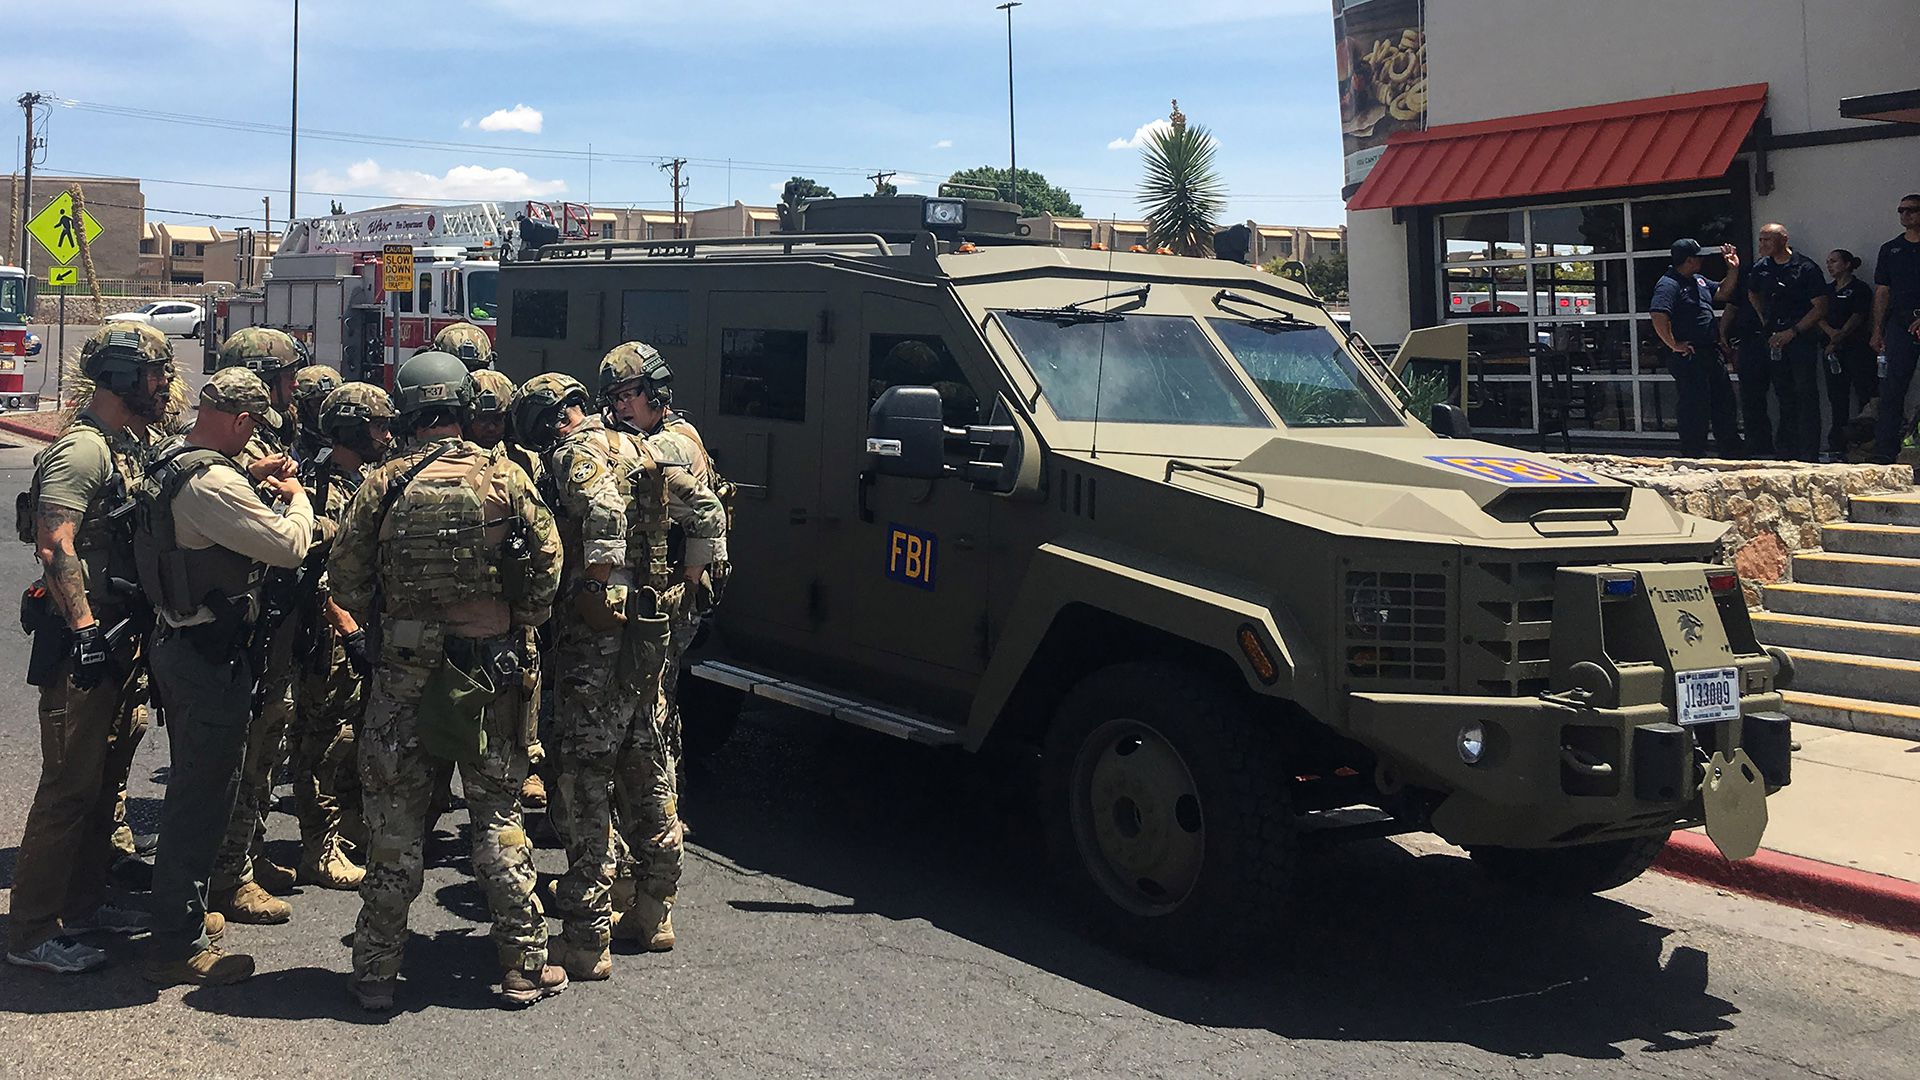 Diversas agencias del orden público respondieron al tiroteo en un Wal-Mart cerca del centro comercial Cielo Vista en El Paso, Texas, el sábado 3 de agosto de 2019 (Foto: AFP)